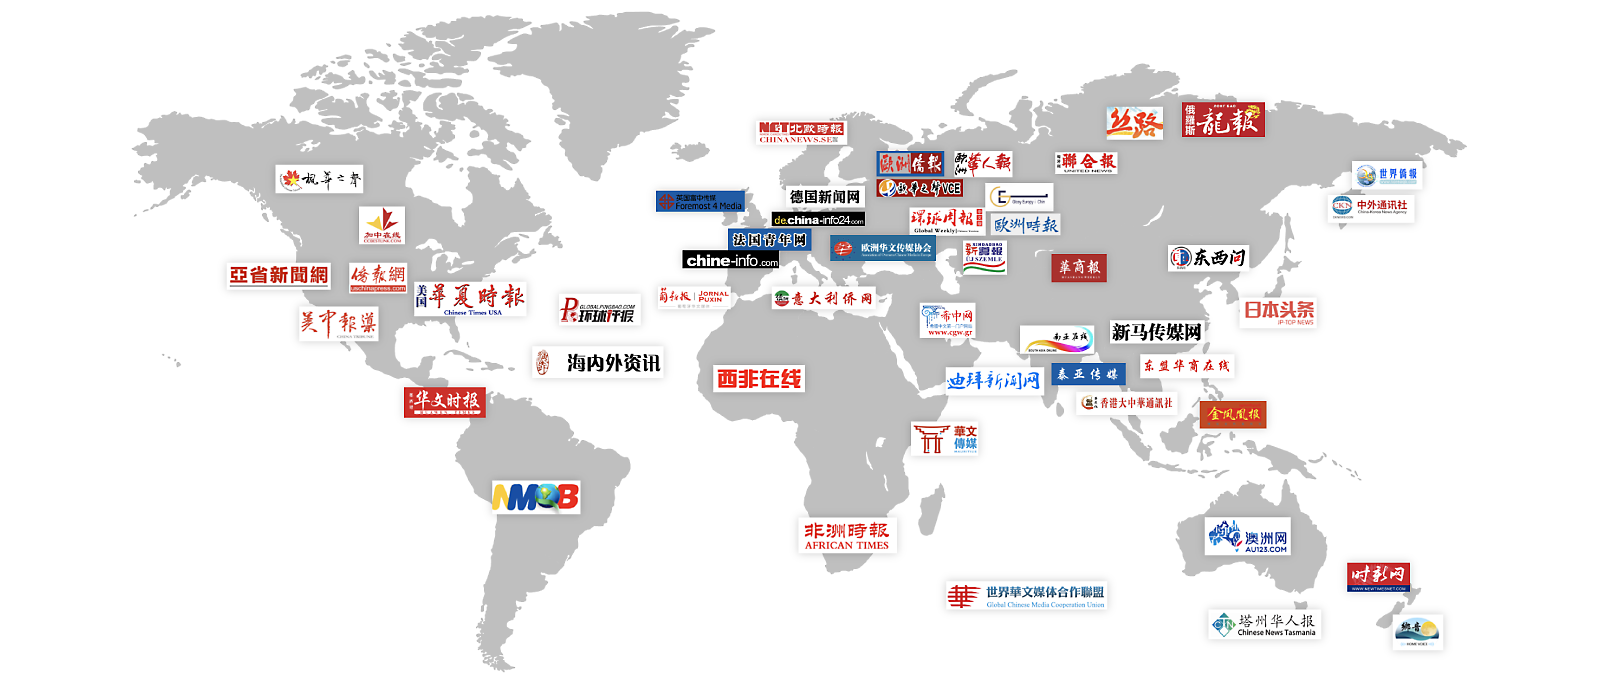 有 20 多個針對全球海外華僑華人中文網站標誌的世界地圖。